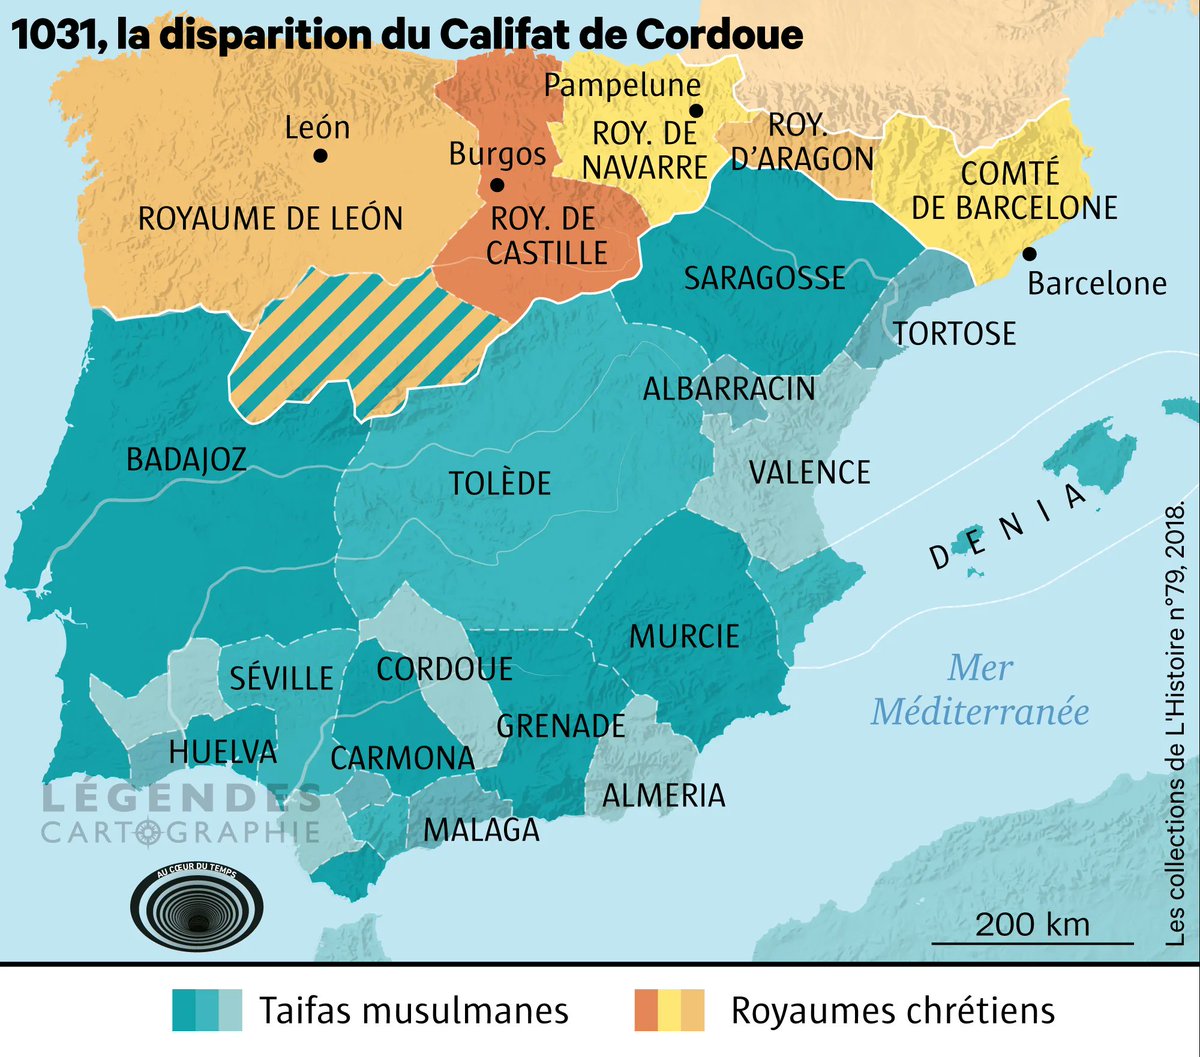 5-7 le XIe siècle, 1031 la disparition du Califat de Cordoue